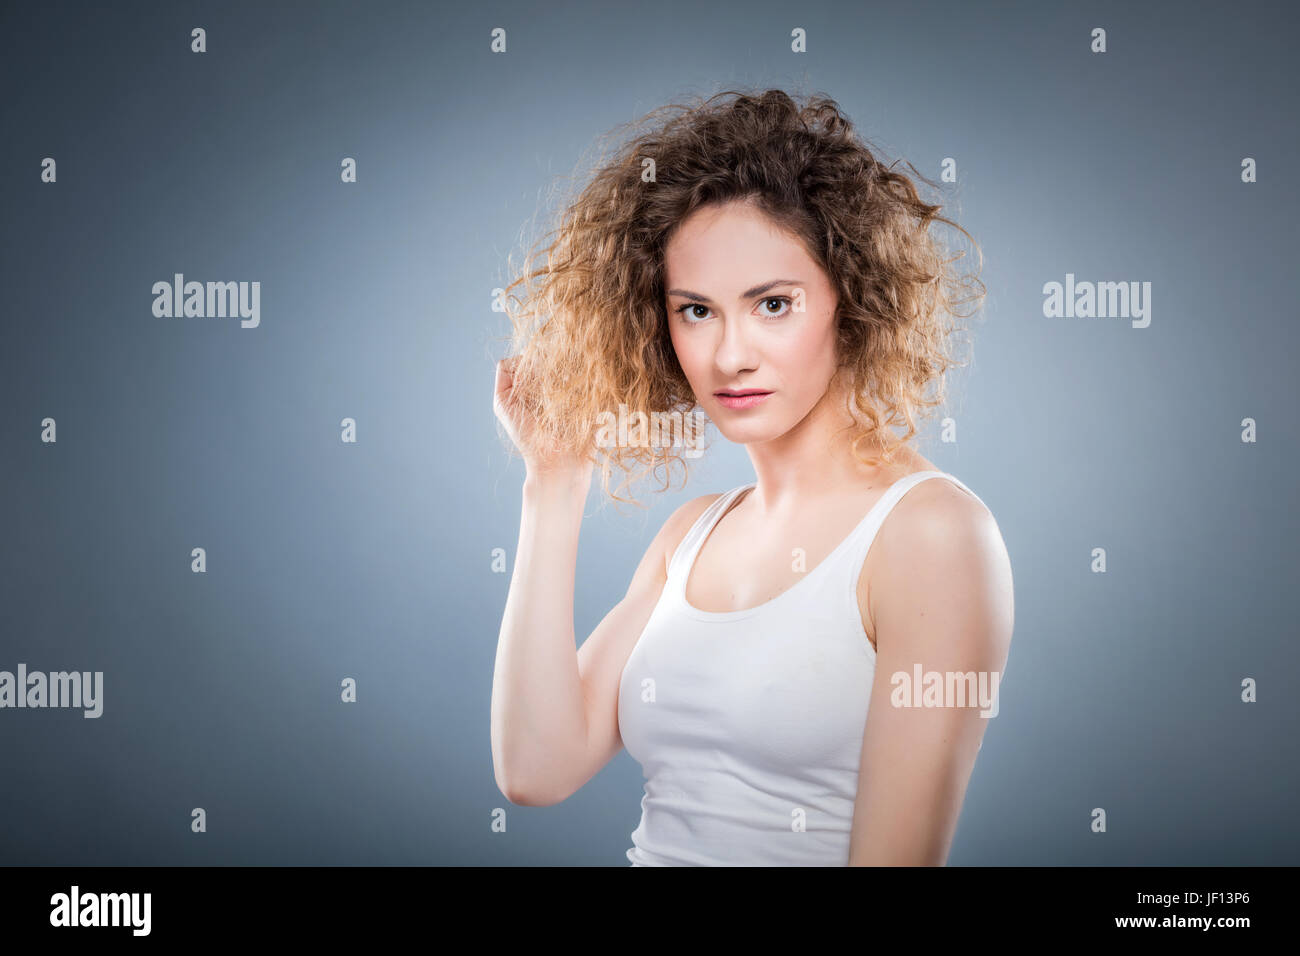 Retrato de una joven chica positiva tocando suavemente su cabello rizado. Natural, sana y auténtica de la mujer. Foto de stock